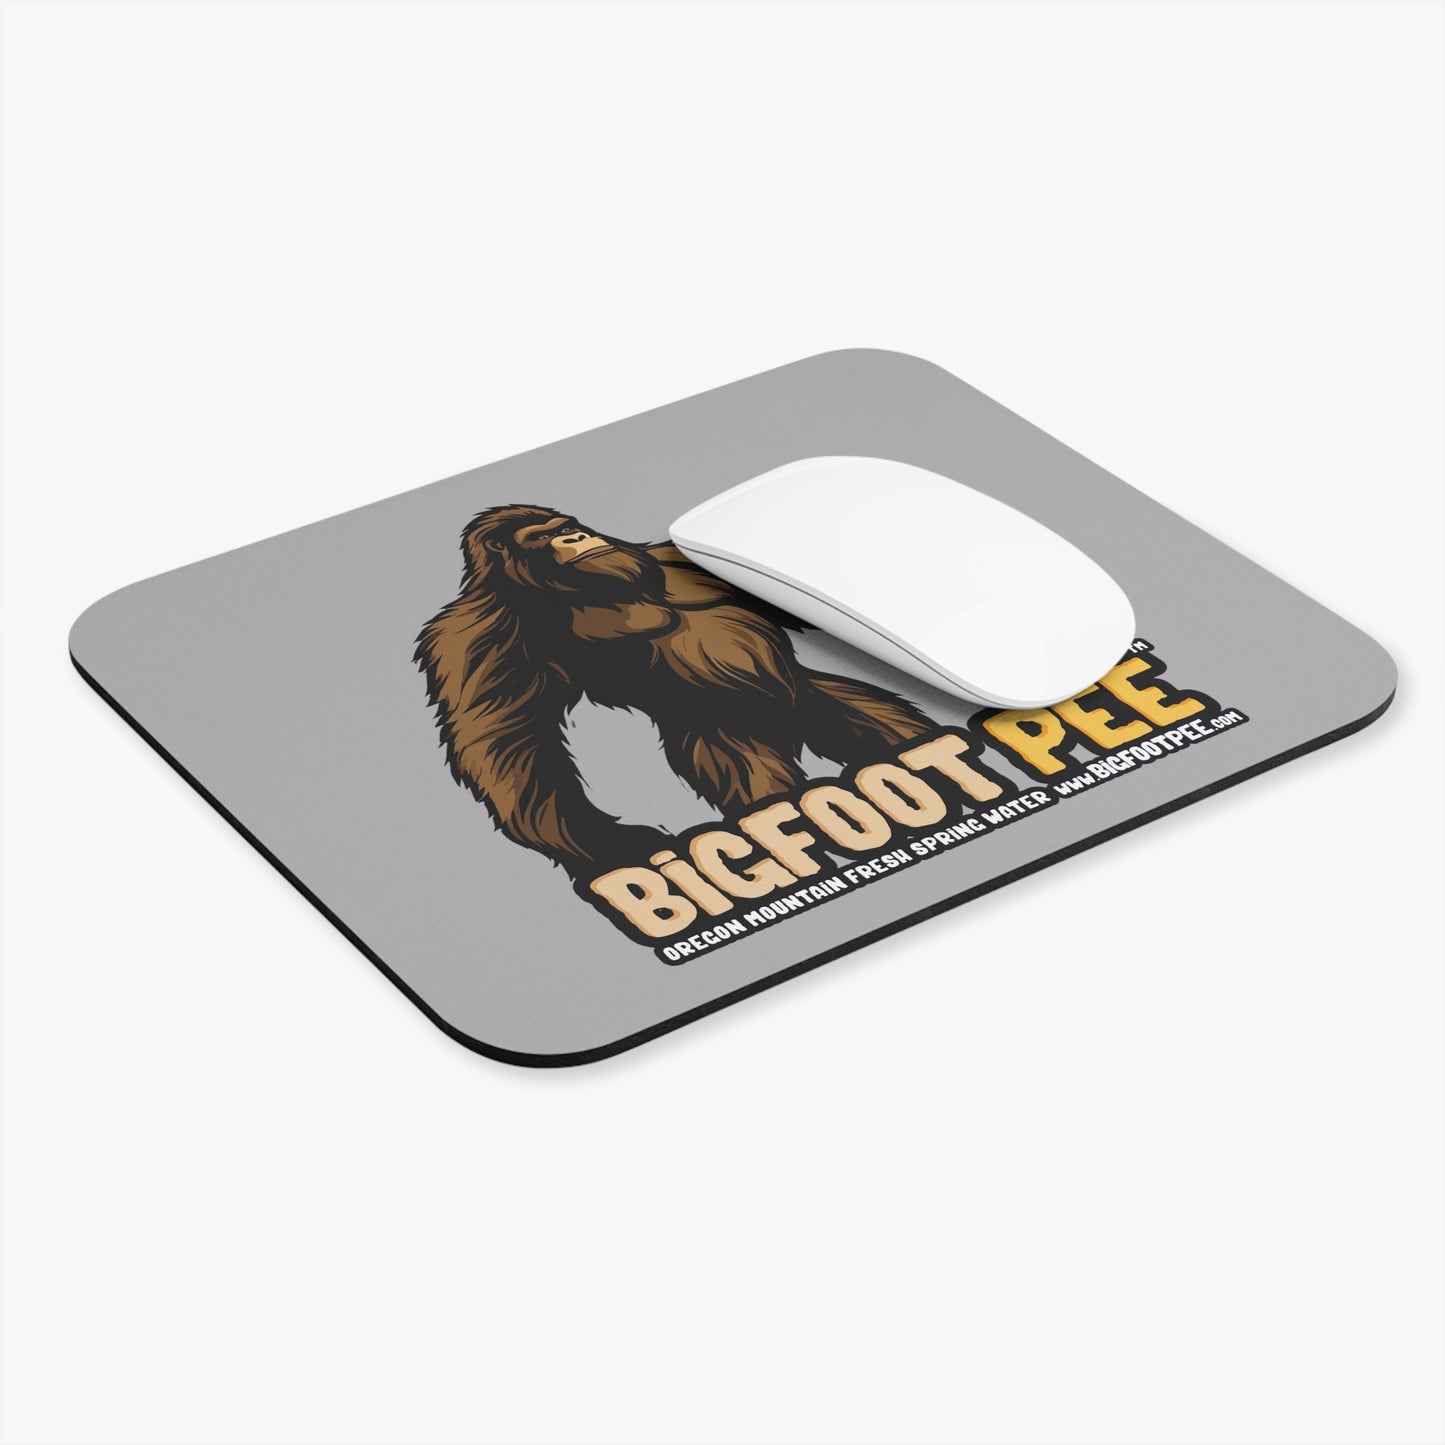 Bigfoot Pee Mouse Pad 8"x9" Tan